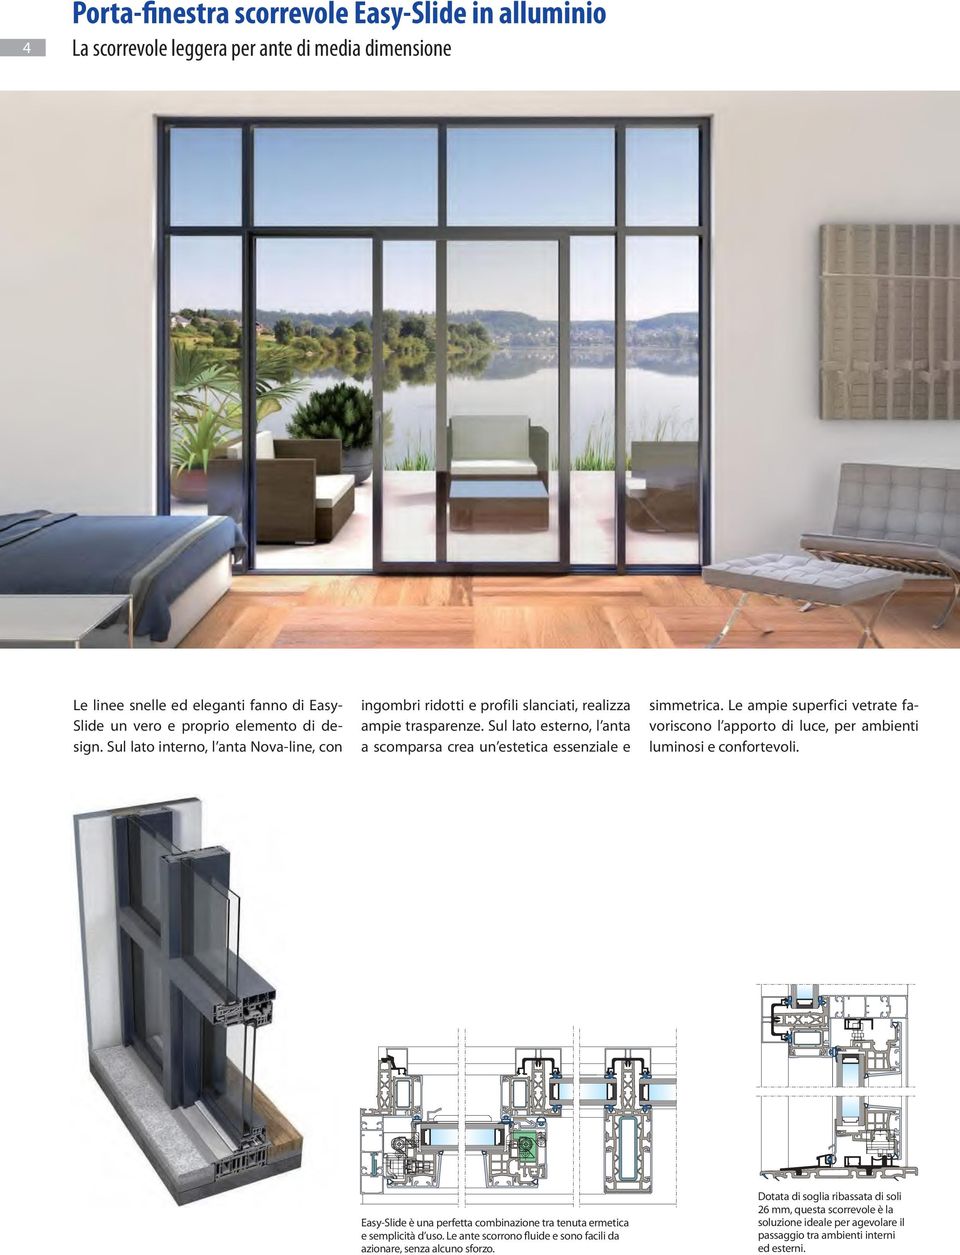 Le ampie superfici vetrate favoriscono l apporto di luce, per ambienti luminosi e confortevoli. Easy-Slide è una perfetta combinazione tra tenuta ermetica e semplicità d uso.